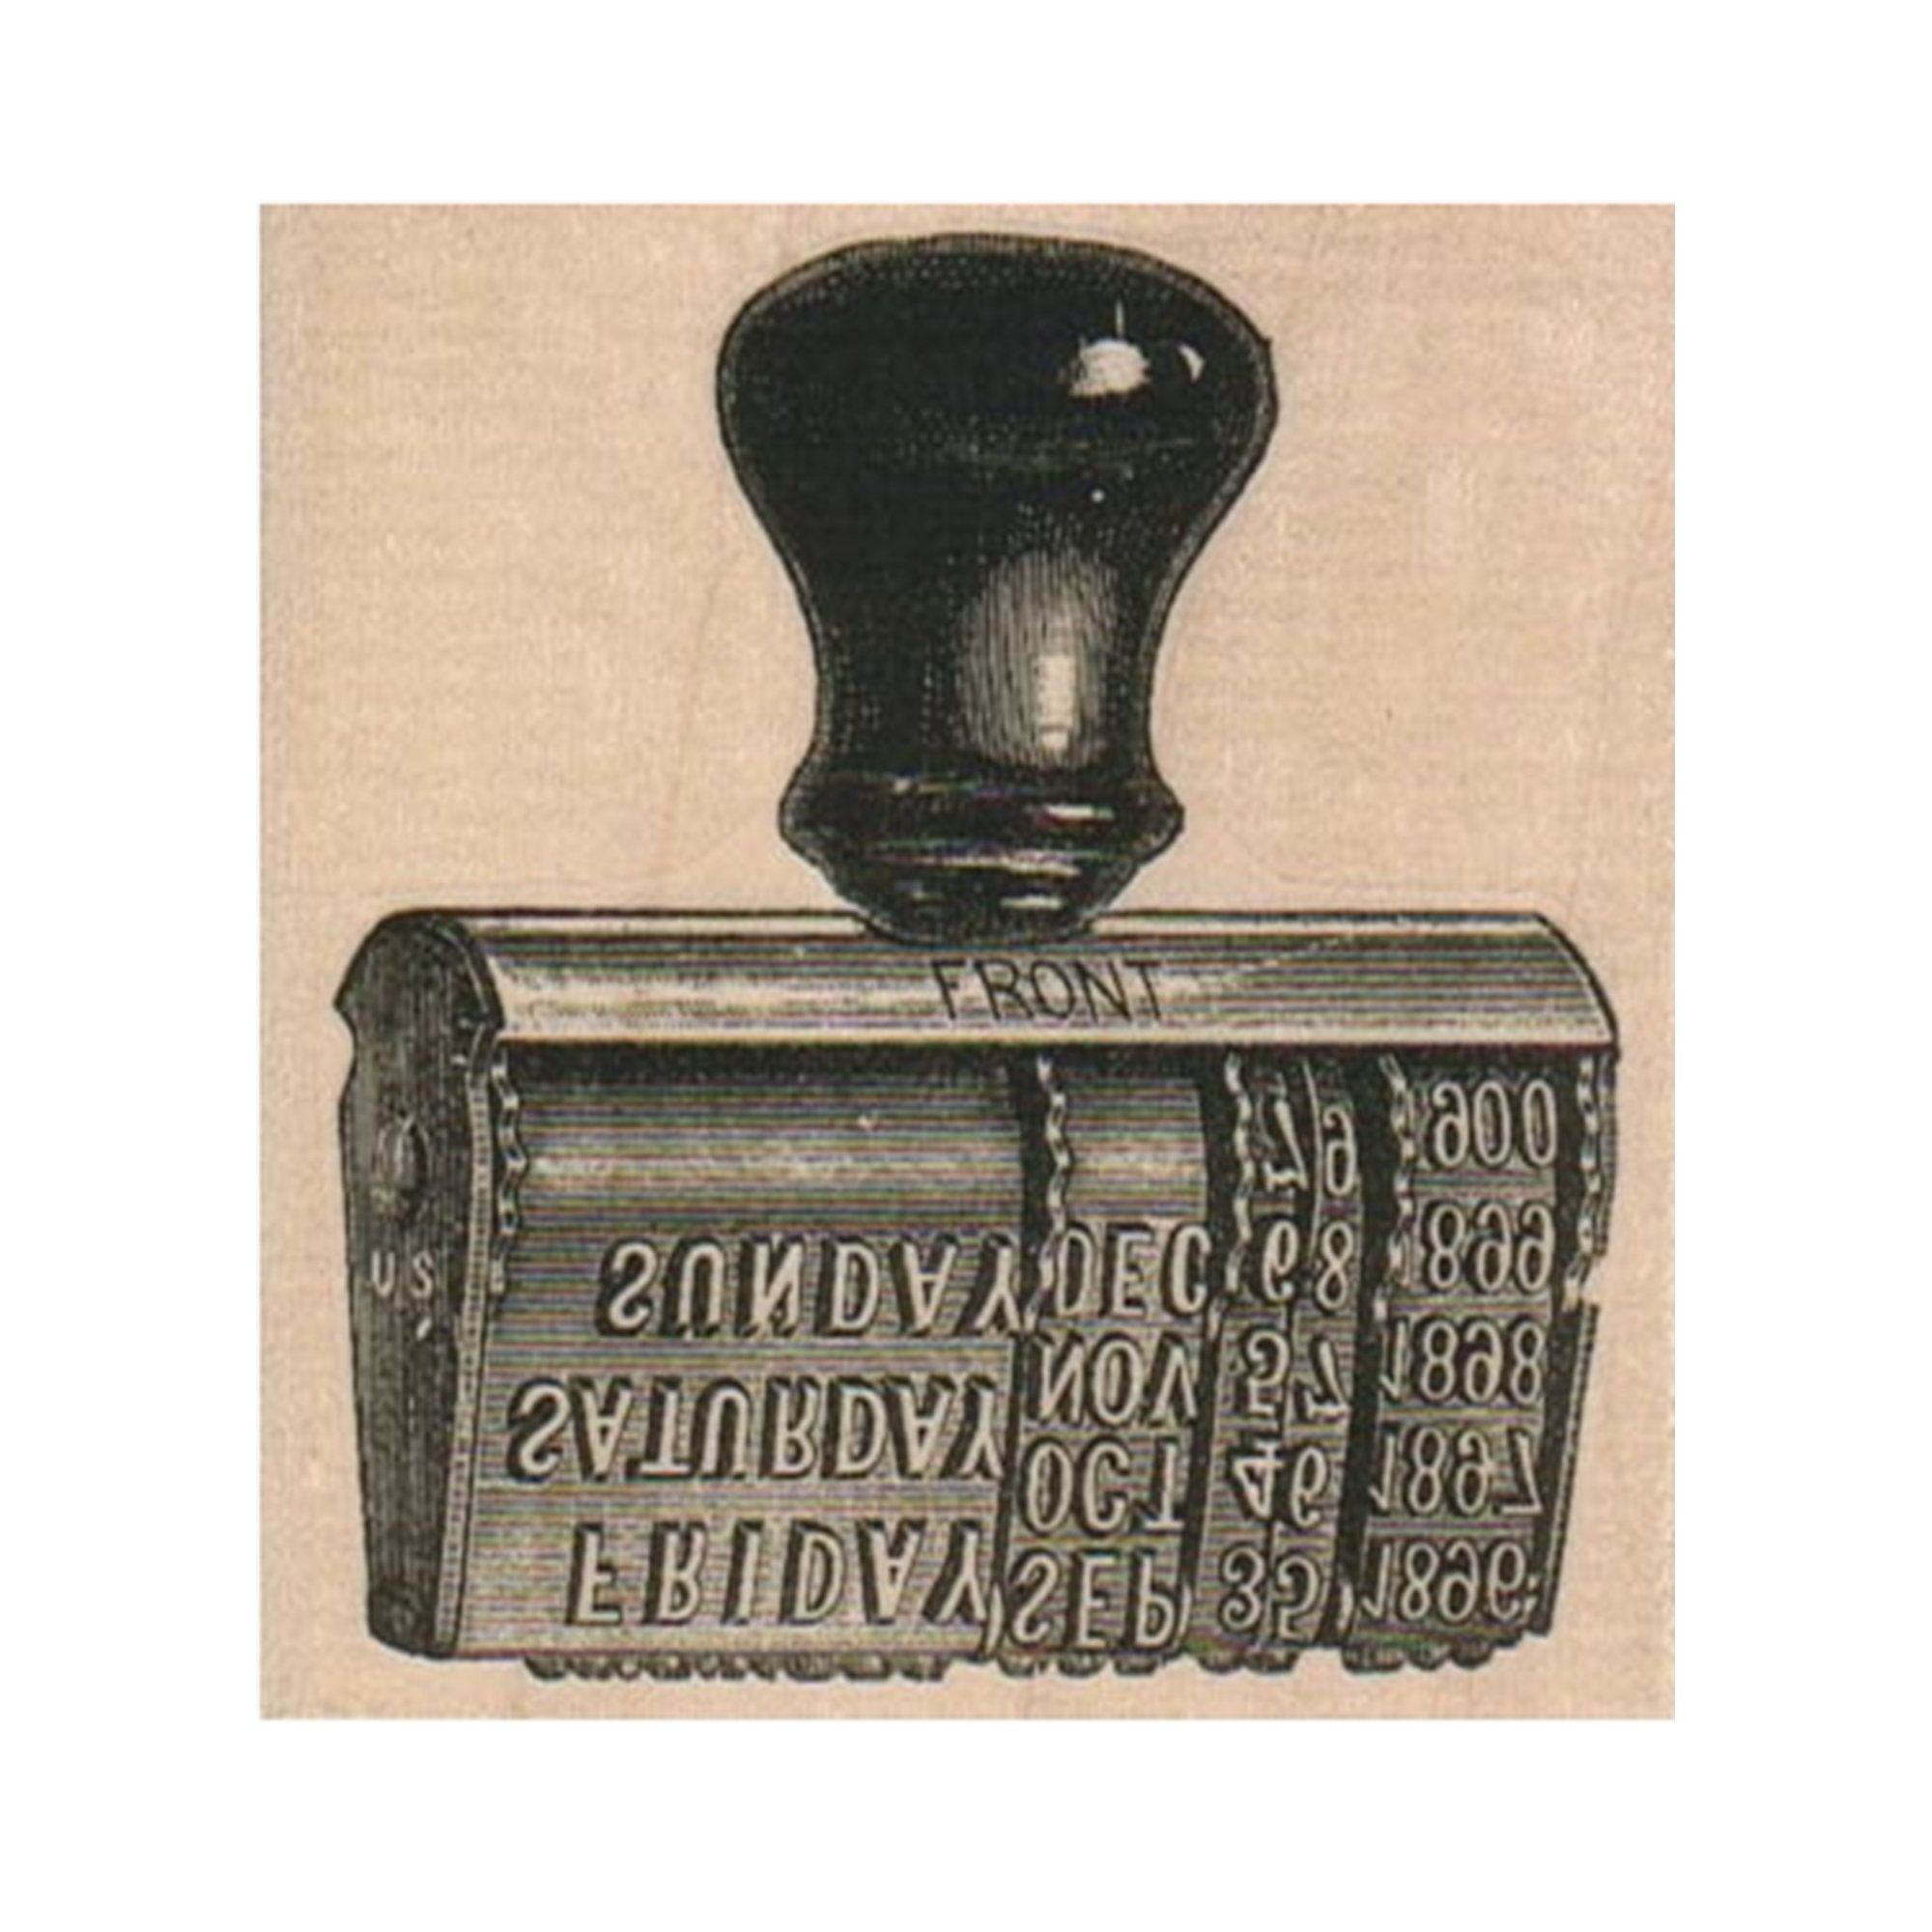 Vintage Date Stamp RUBBER STAMP, Rubber Stamp, Date Stamp, Date Rubber Stamp,  Old Time Rubber Stamp, Vintage Stamp, Retro Office Stamp 